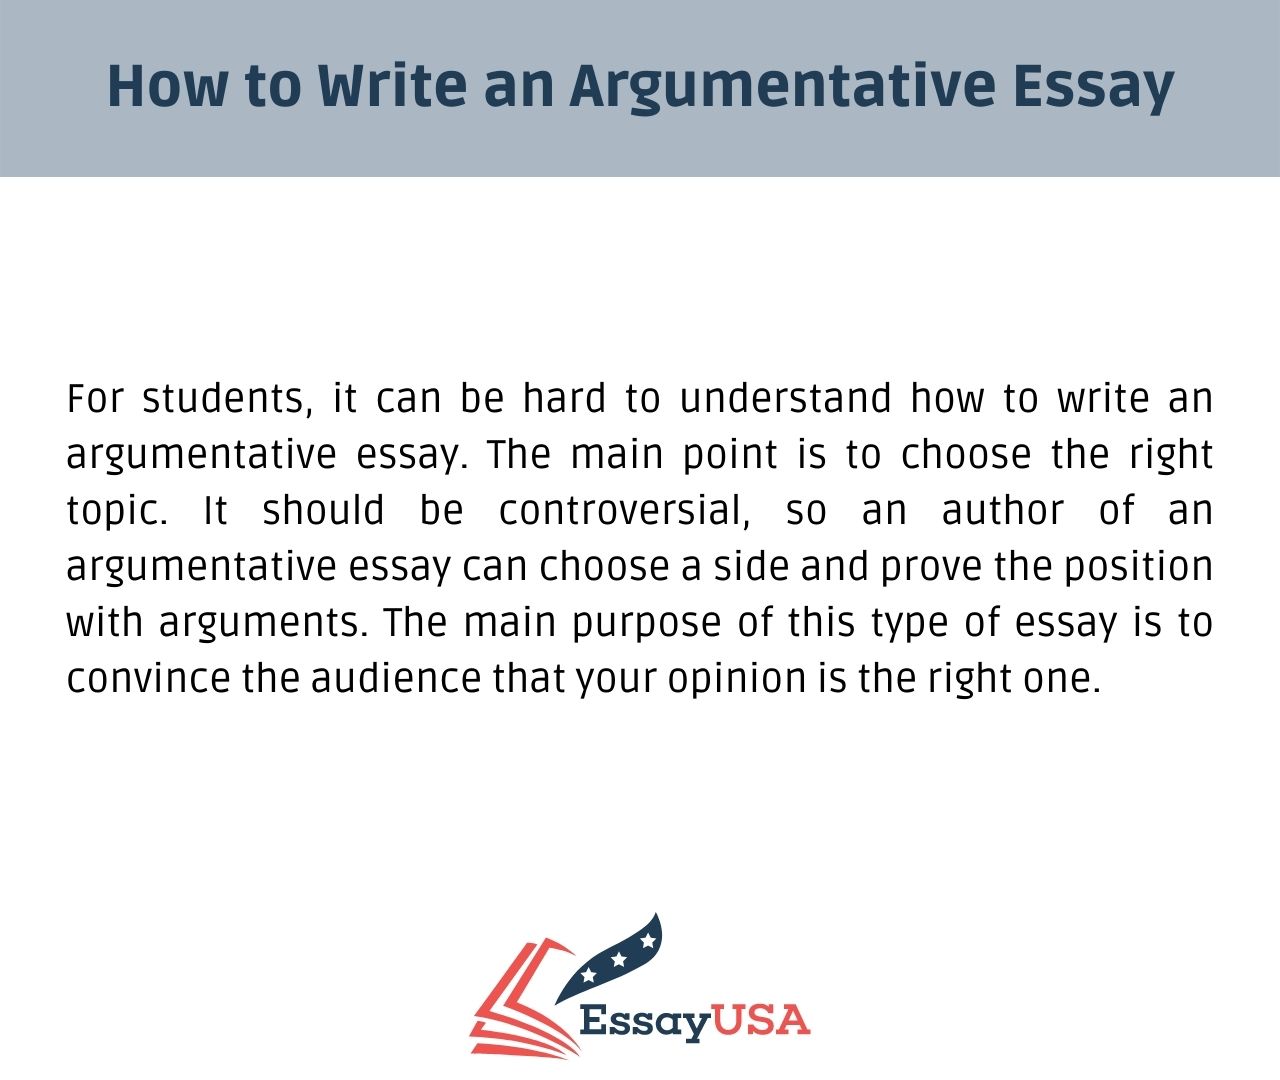 how do you write an argumentative essay step by step